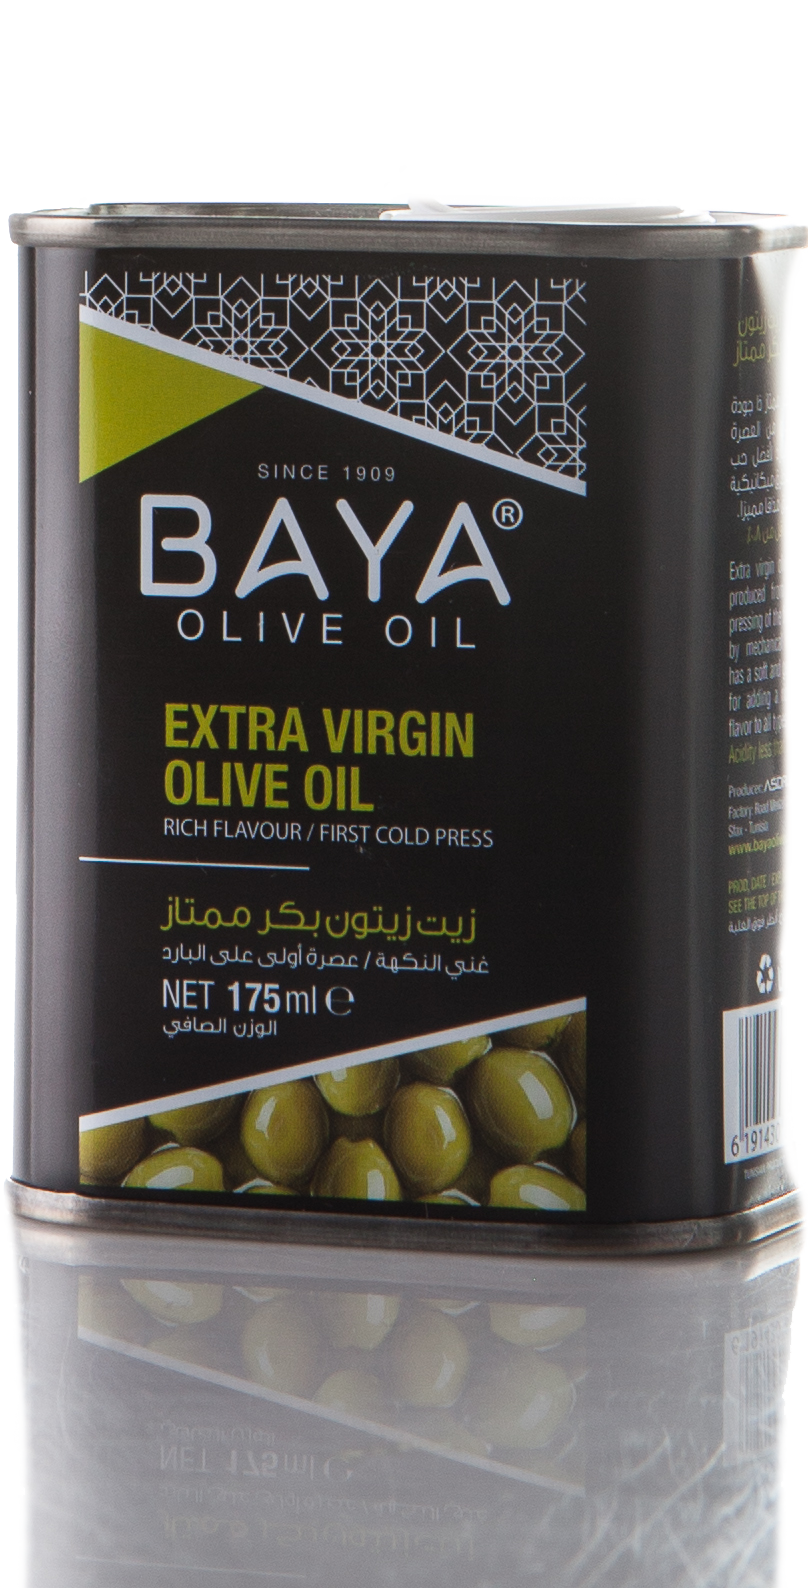 Оливковое масло baya. Baya Экстра Вирджин оливковое масло. Baya Olive Oil. Baya масло. Масло оливковое Bay.